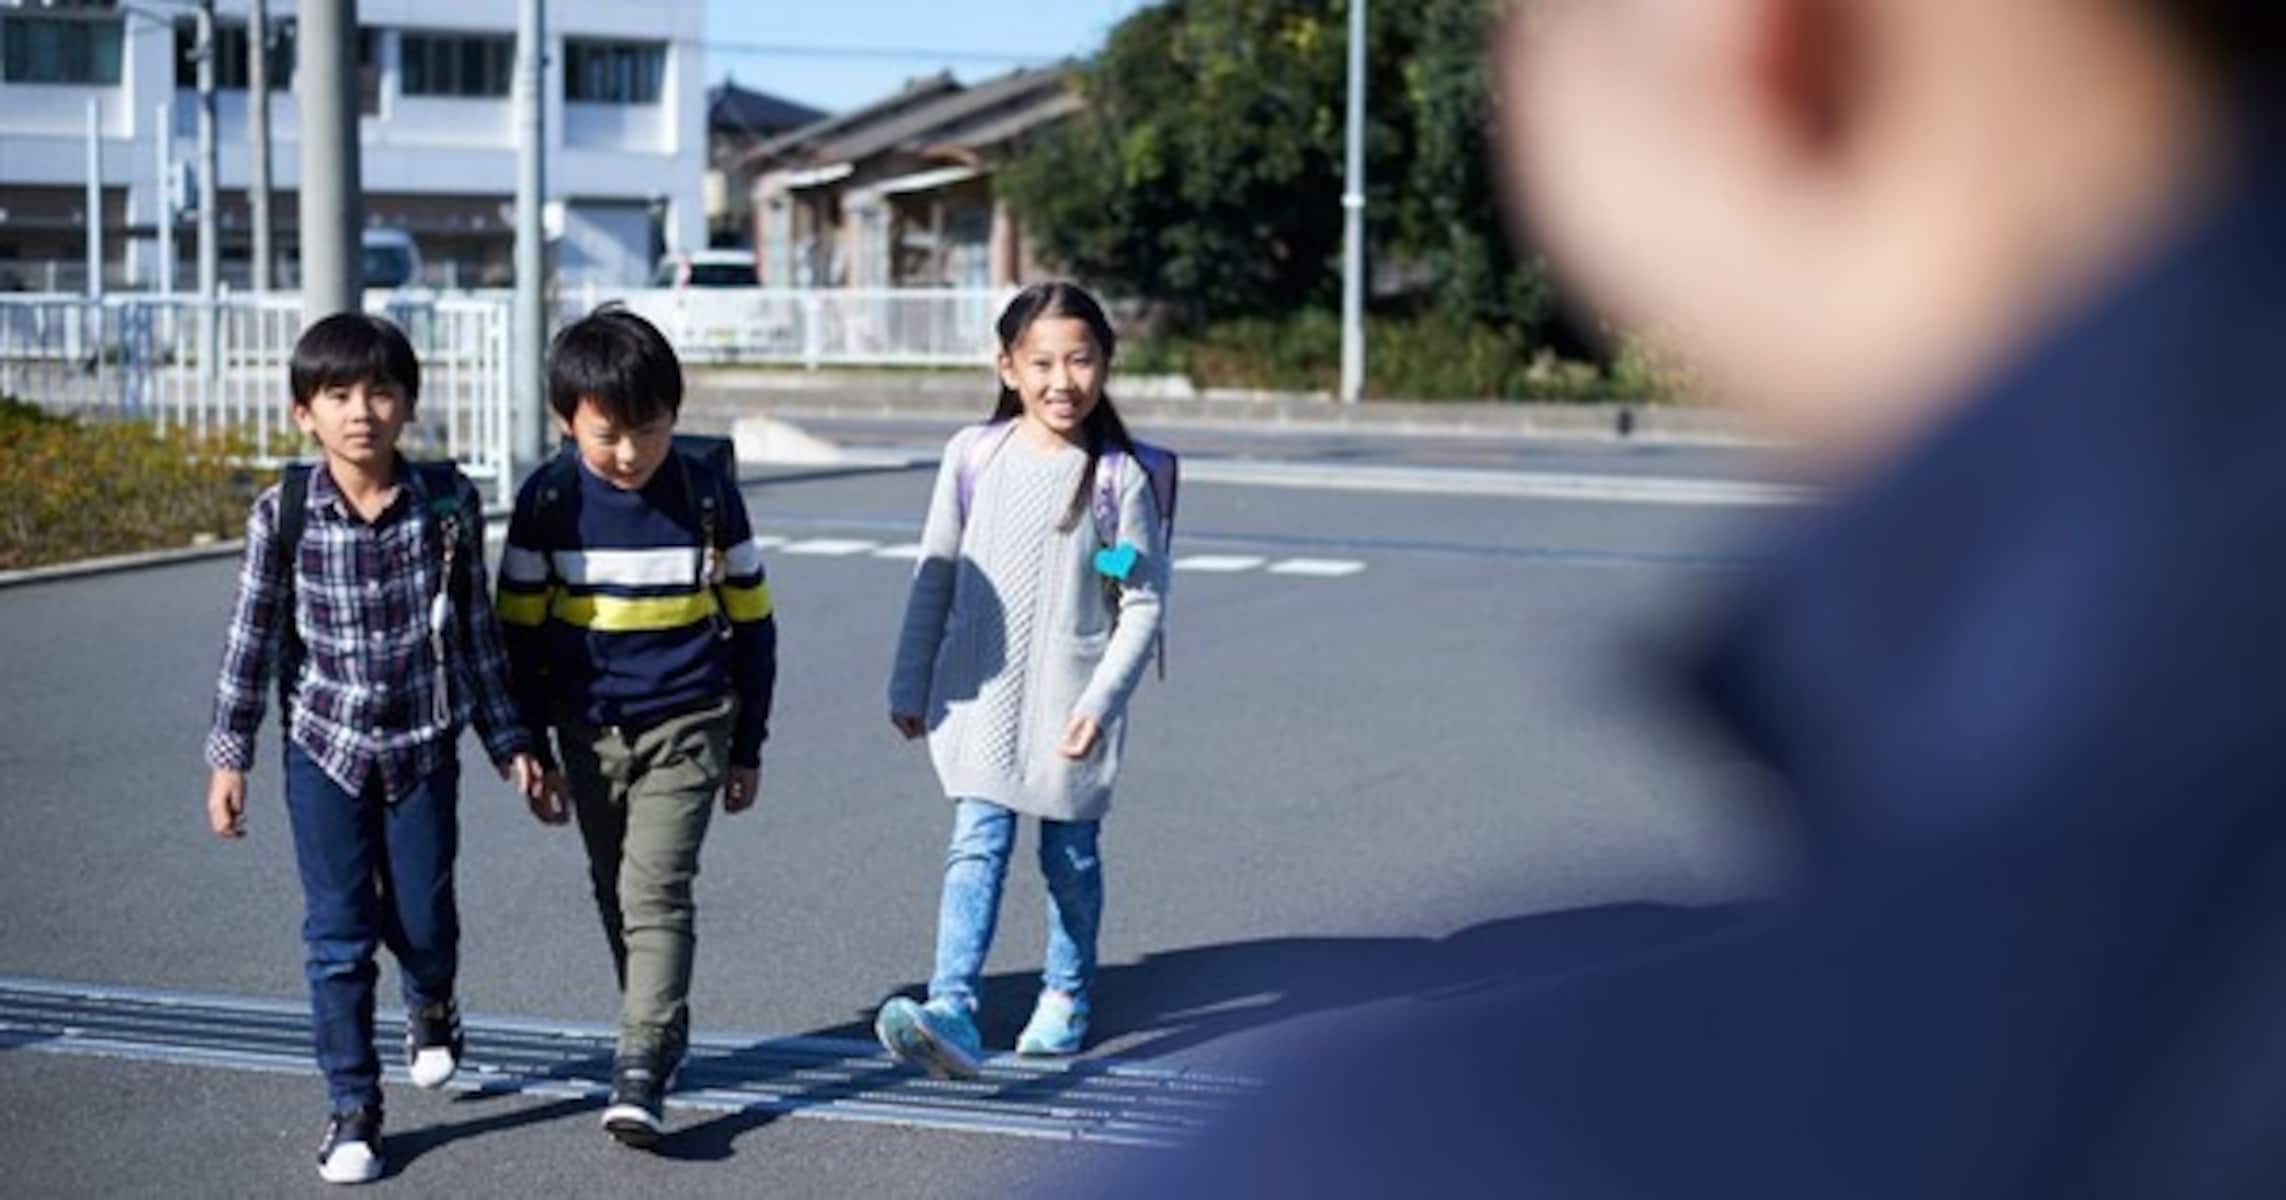 「不審者ってどんな人？」子供から返ってくる答えに対する大阪府警の投稿が話題に「そんな不審者はいません」